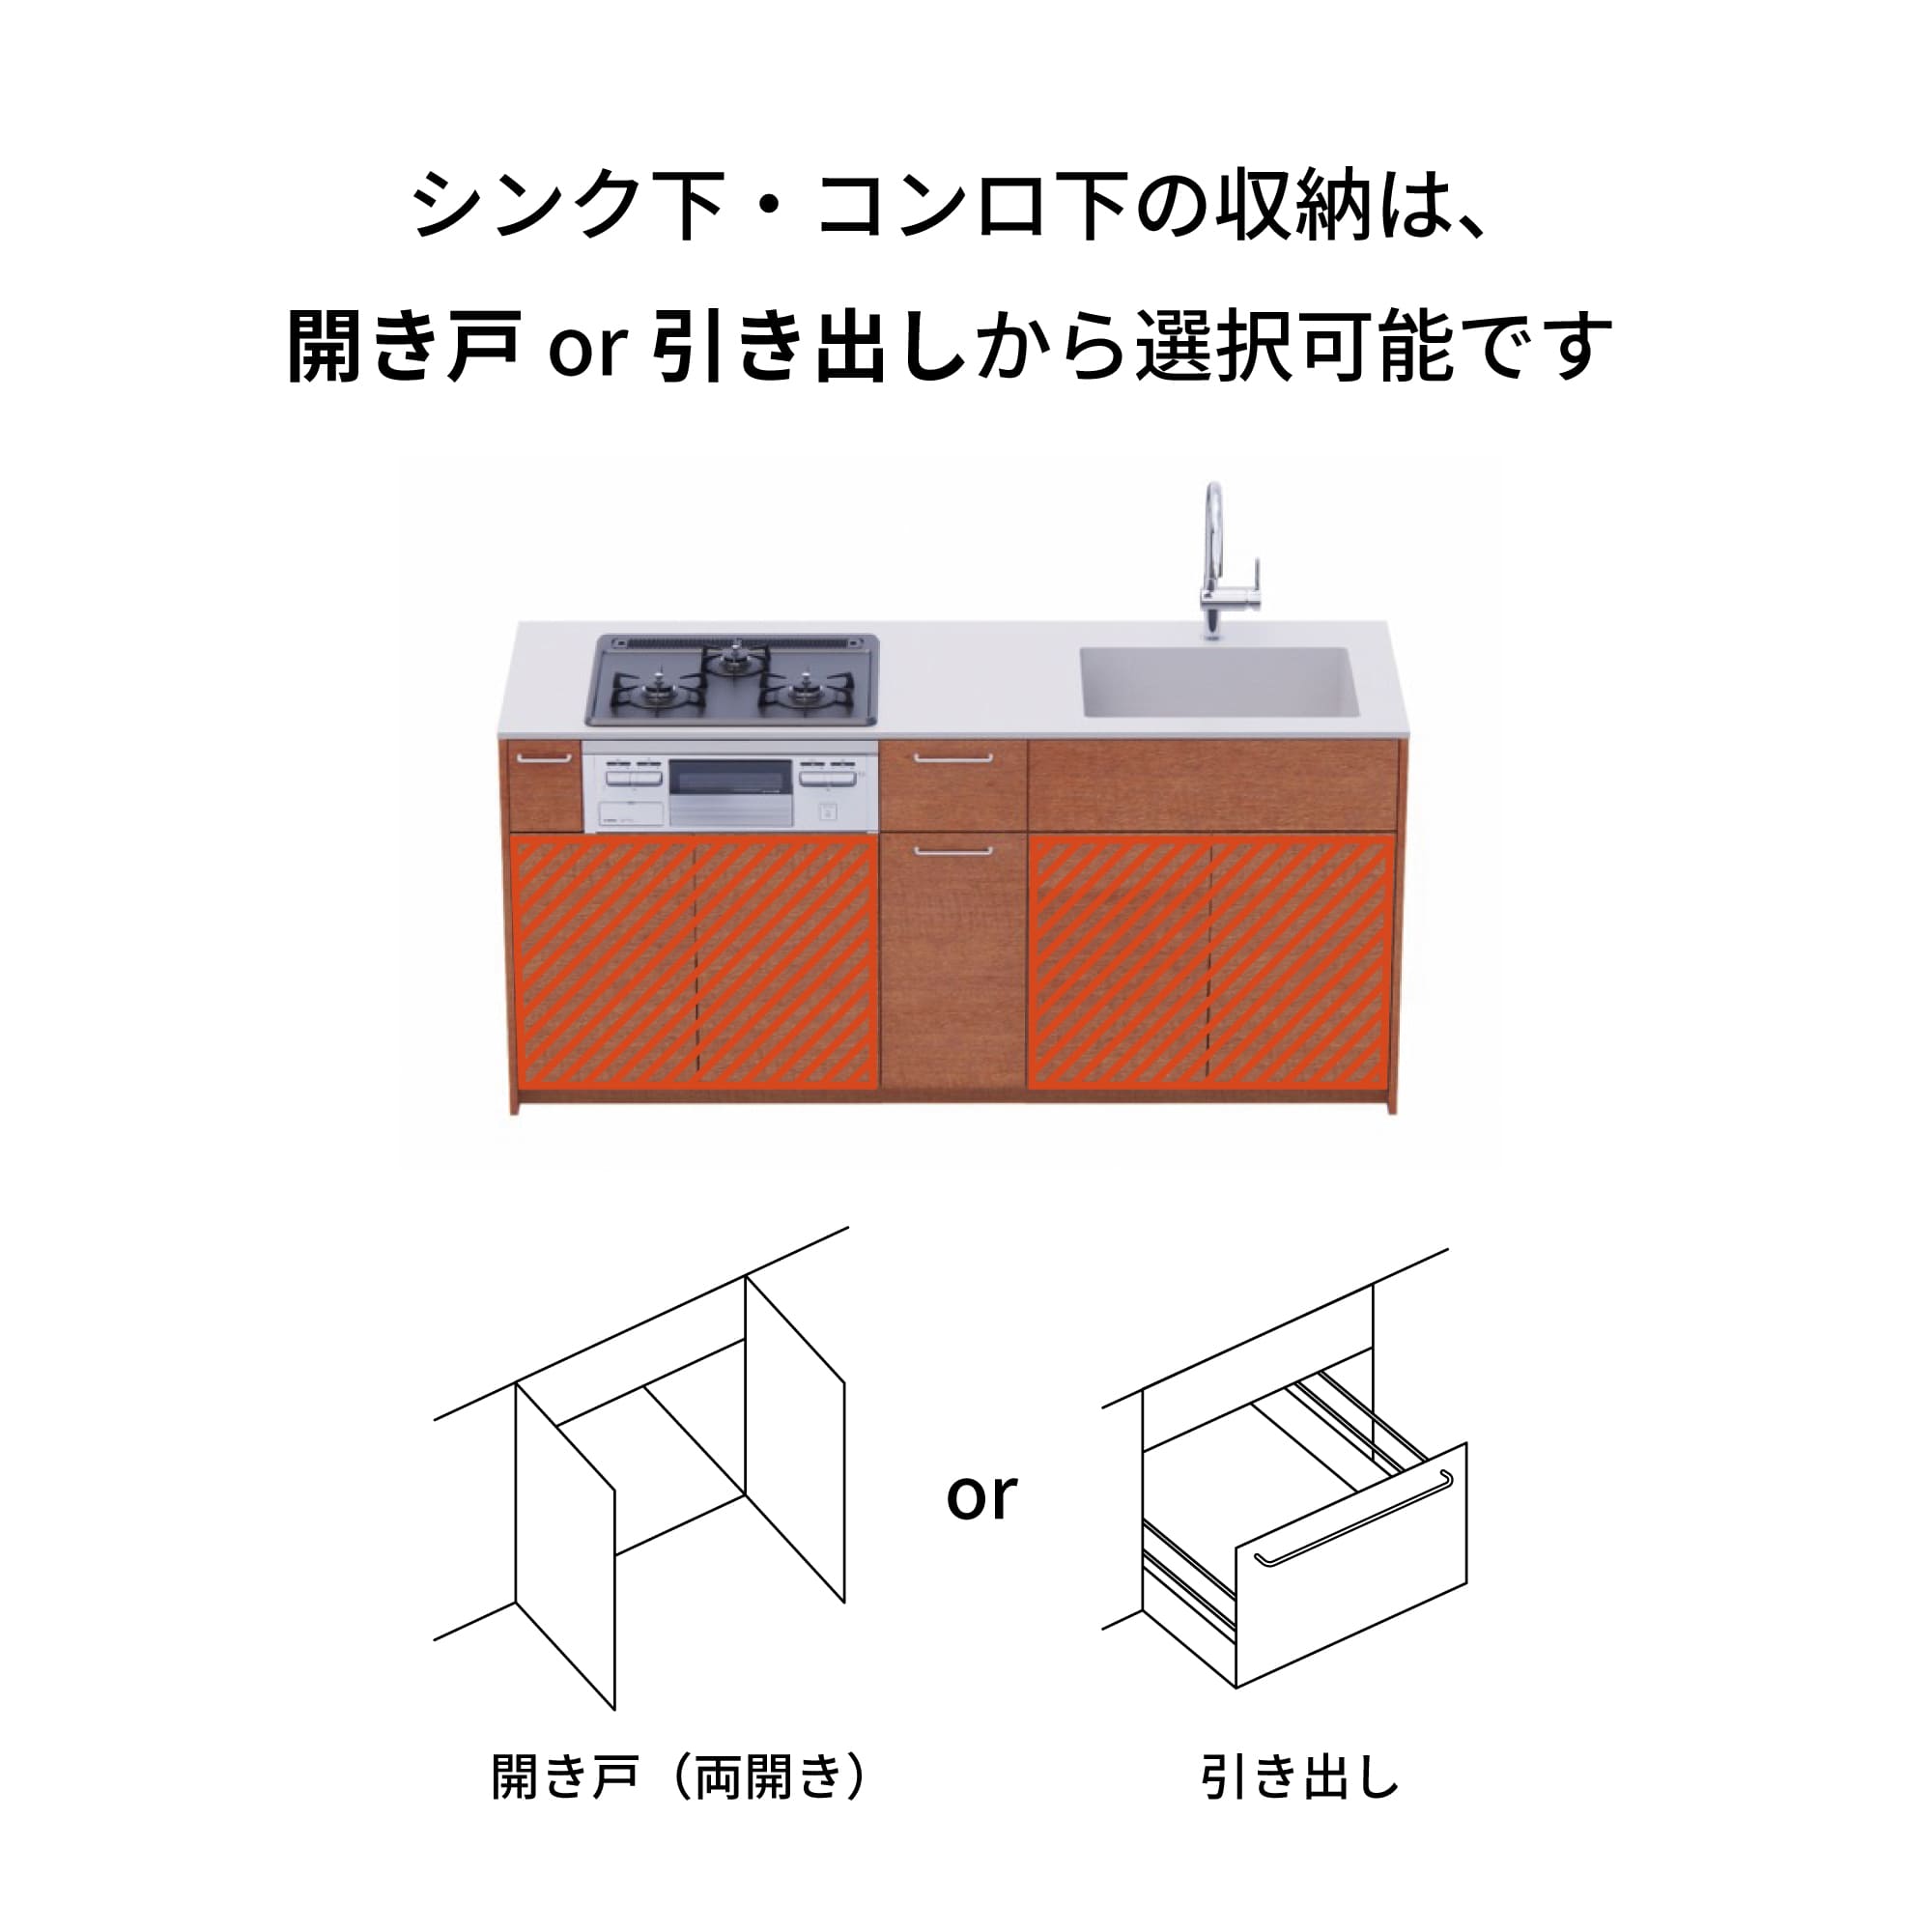 木製システムキッチン 対面型 W1990・コンロあり / オーブンなし / 食洗機なし KB-KC022-31-G183 引き出し下とコンロ下の収納が選択可能です